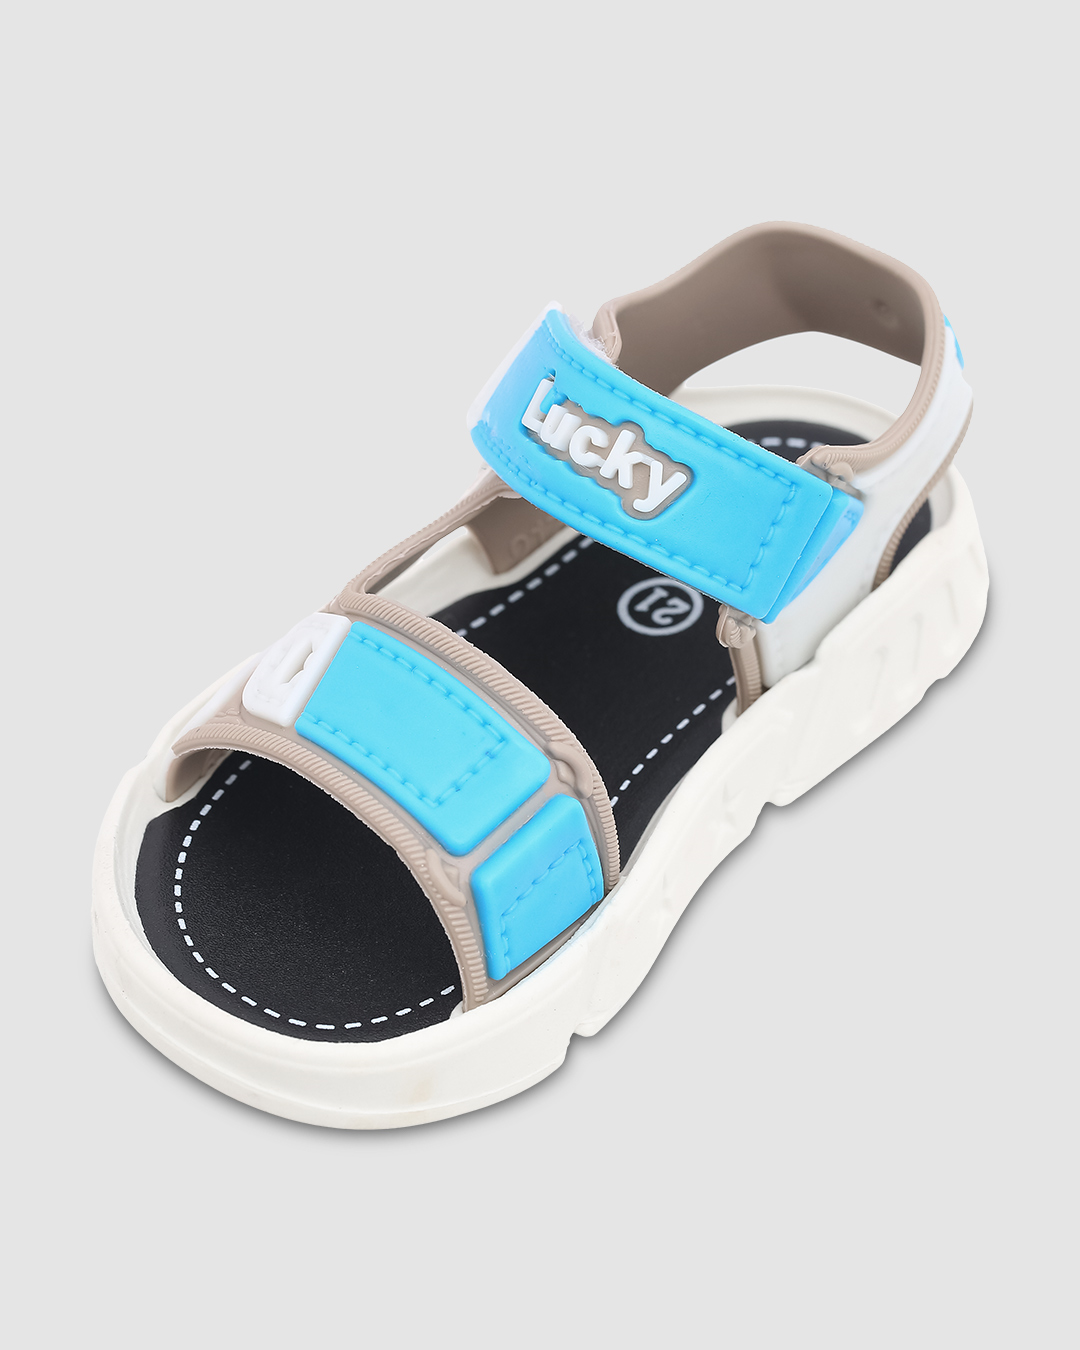 Giày sandal Á Châu Avakids AC34 màu be - xanh dương